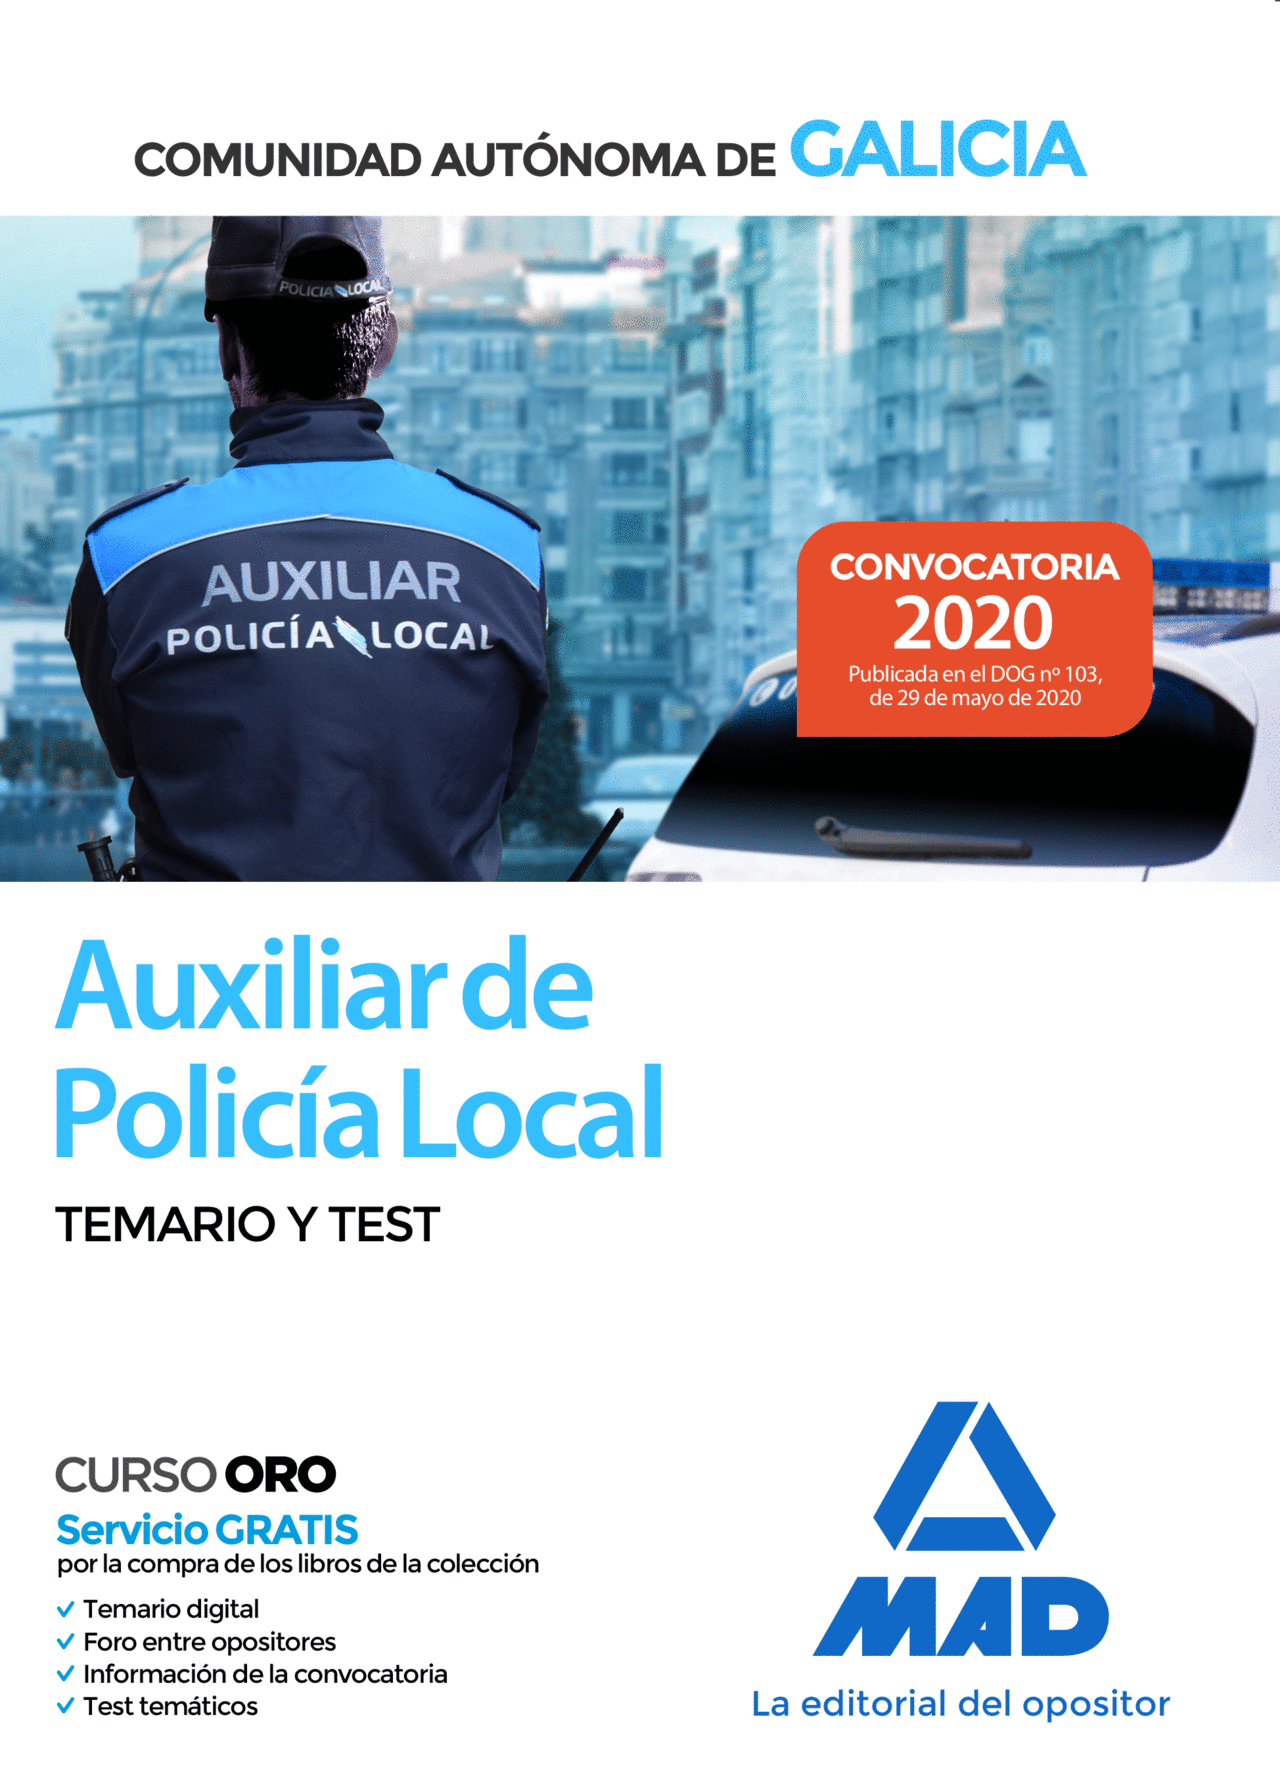 AUXILIAR DE POLICIA LOCAL DE GALICIA. TEMARIO Y TEST